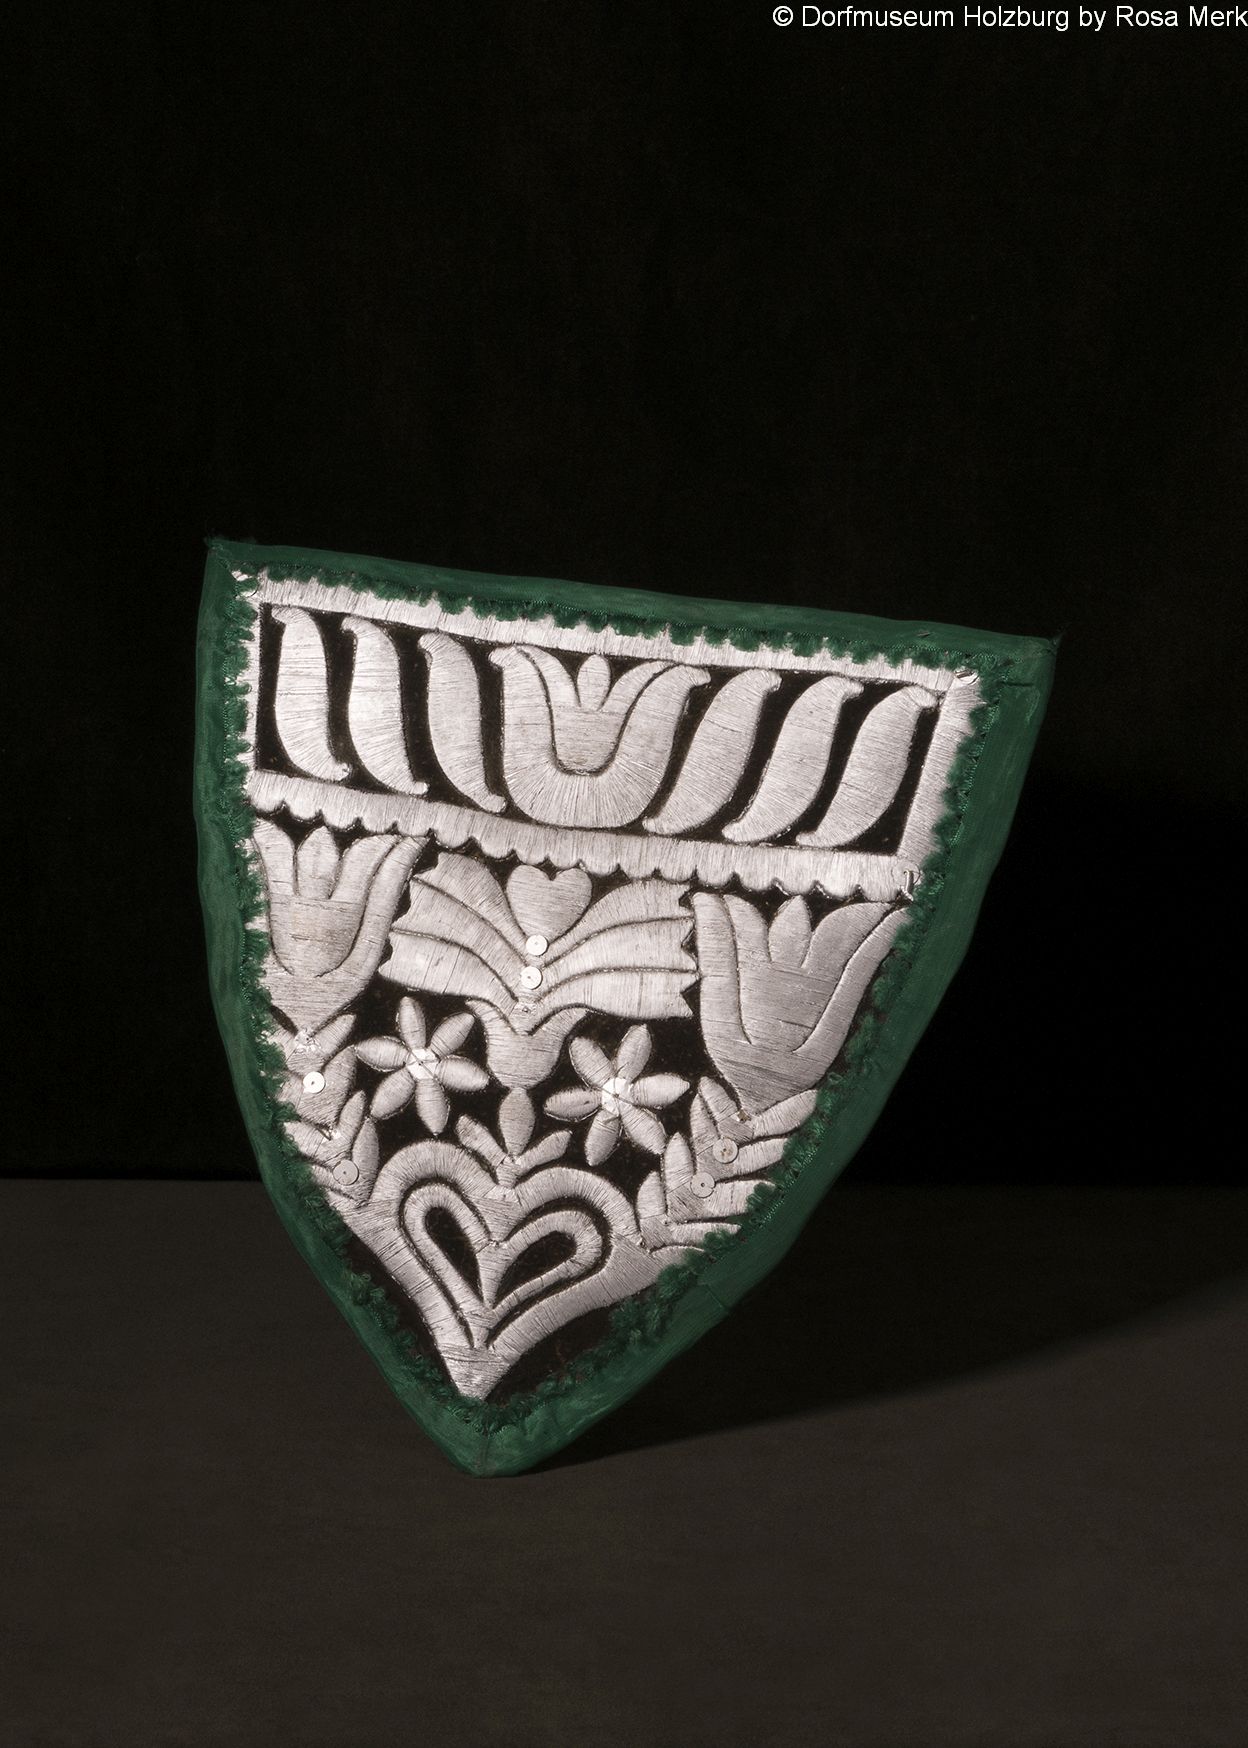 Brustlappen, 19. Jh., mit Silberfäden über Schablone gestickt (Sprengtechnik), mit  grünem Moiréeband eingefasst